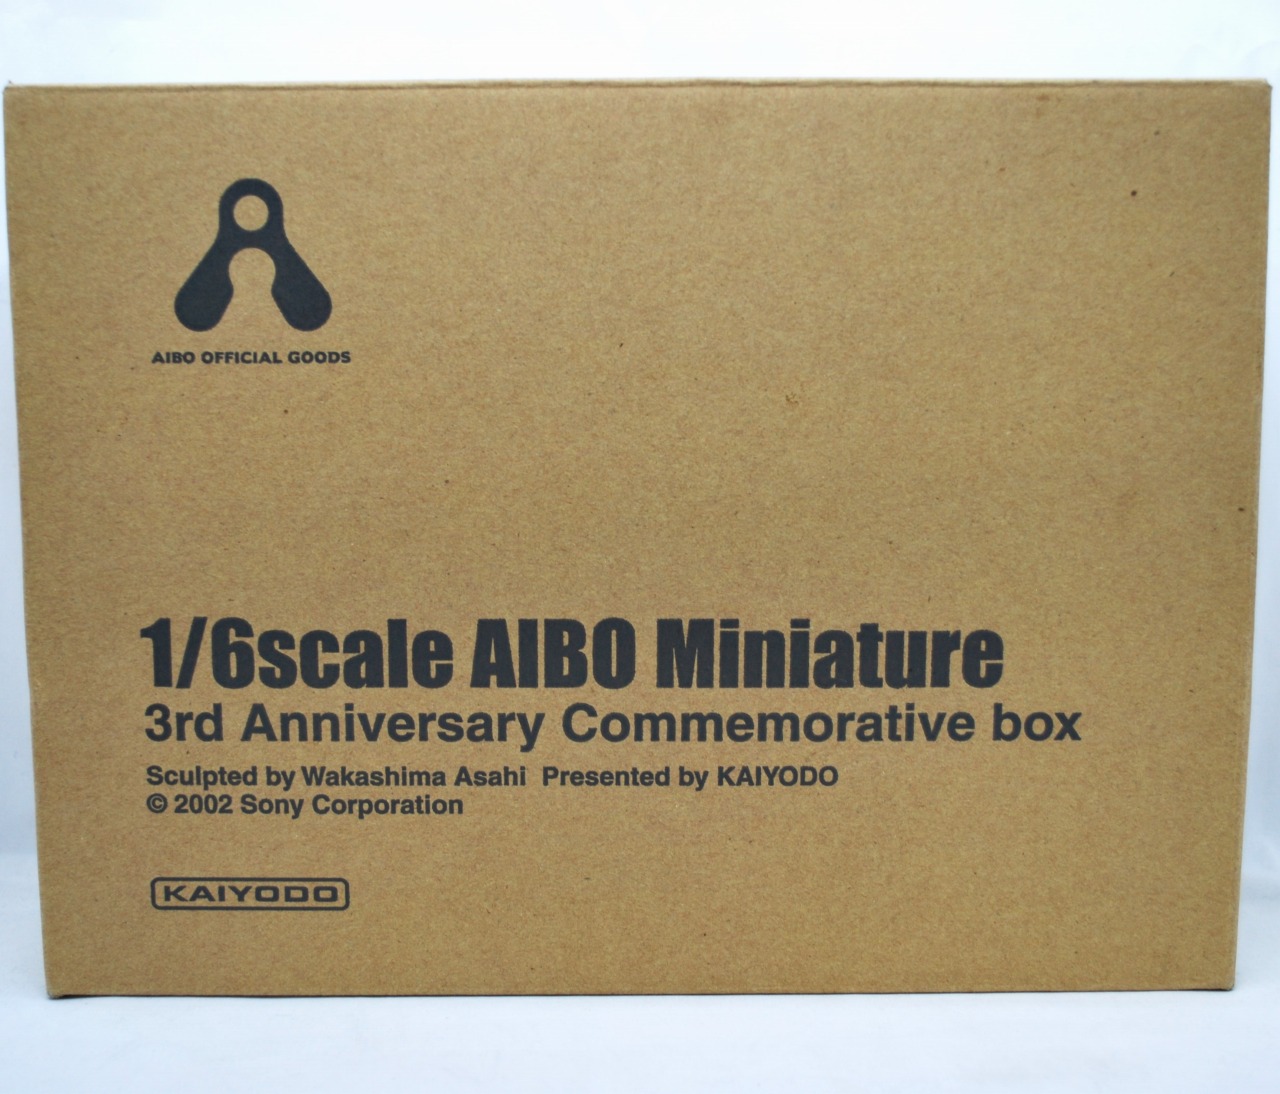 海洋堂 1/6scale AIBO Miniature 3rd Anniversary Commemorative box